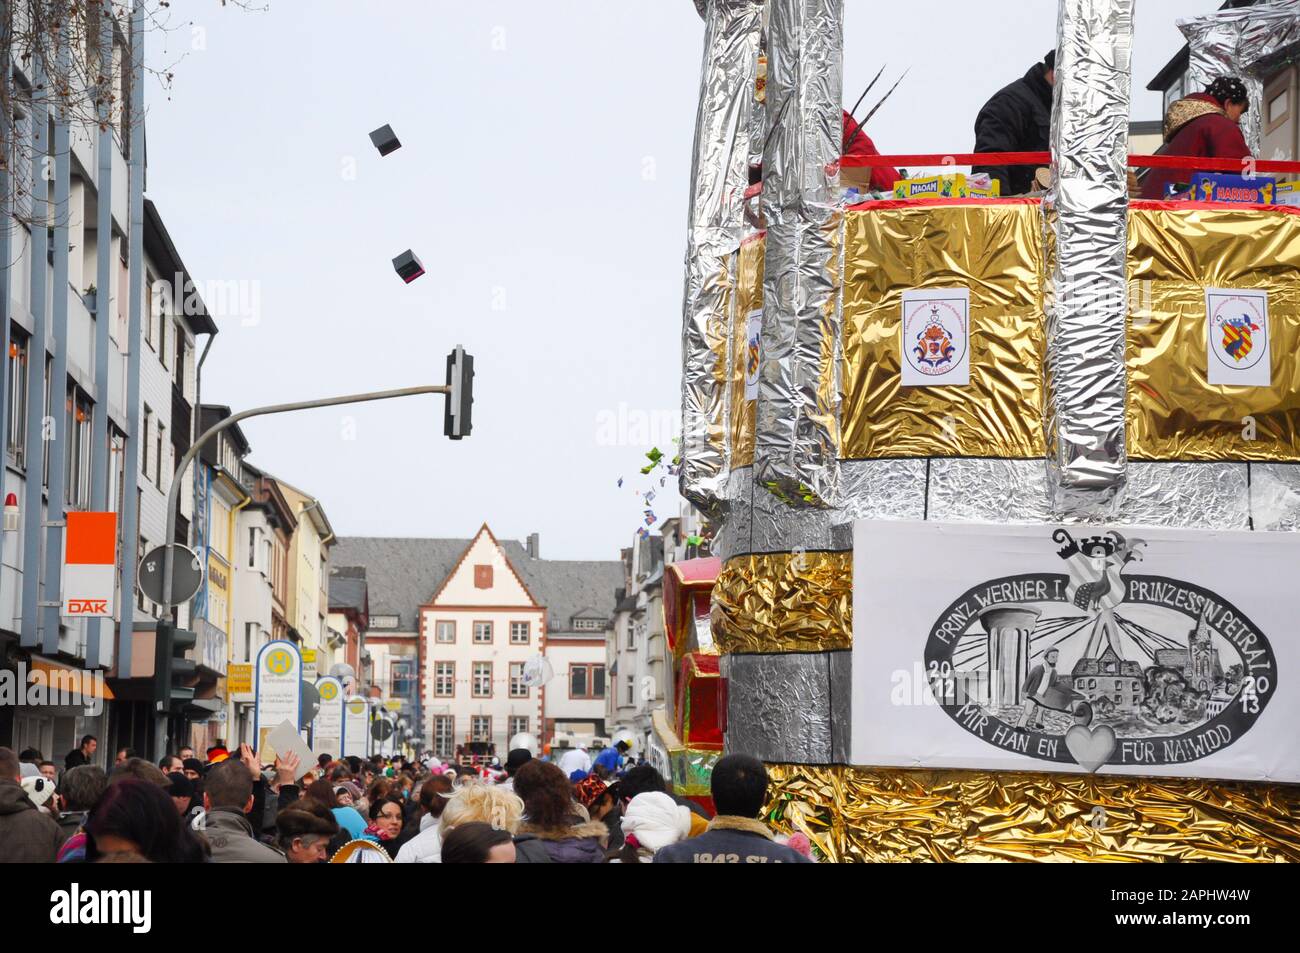 Neuwied, Germania 11 Febbraio 2013. Carnevale tedesco annuale, Rosenmontag (in inglese: Lunedì delle rose) si svolge lo Shrove lunedì prima del Mercoledì delle Ceneri, Foto Stock